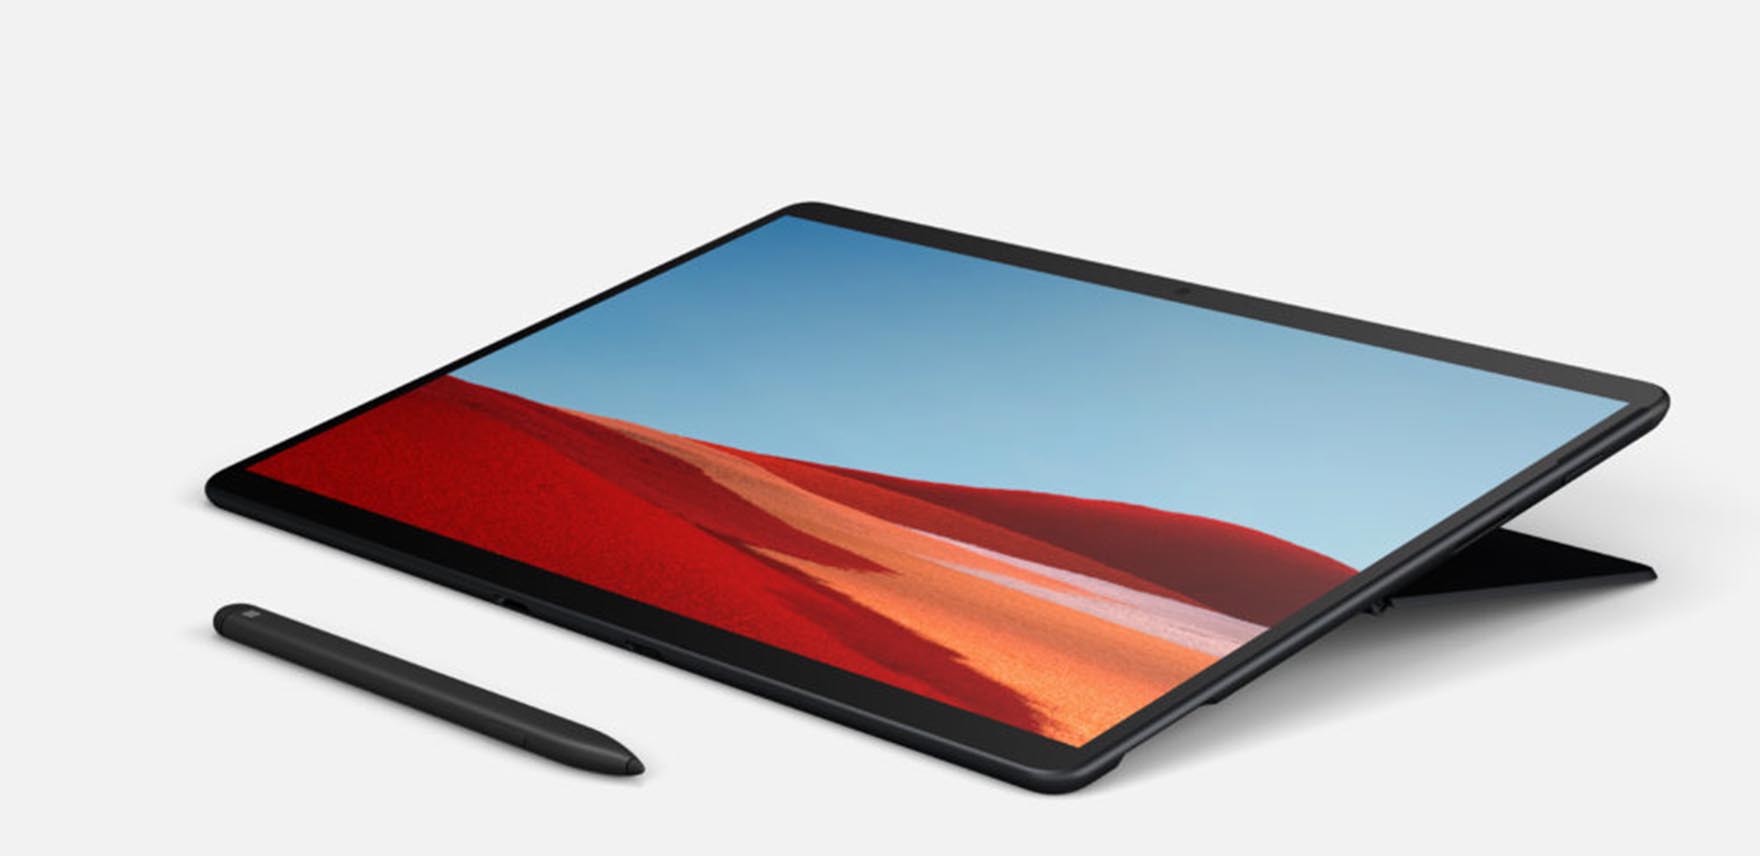 Las últimas imágenes de Surface Pro 8 y Surface Laptop 4 de Microsoft se filtran en línea ¿Confirmando especificaciones y dimensiones?